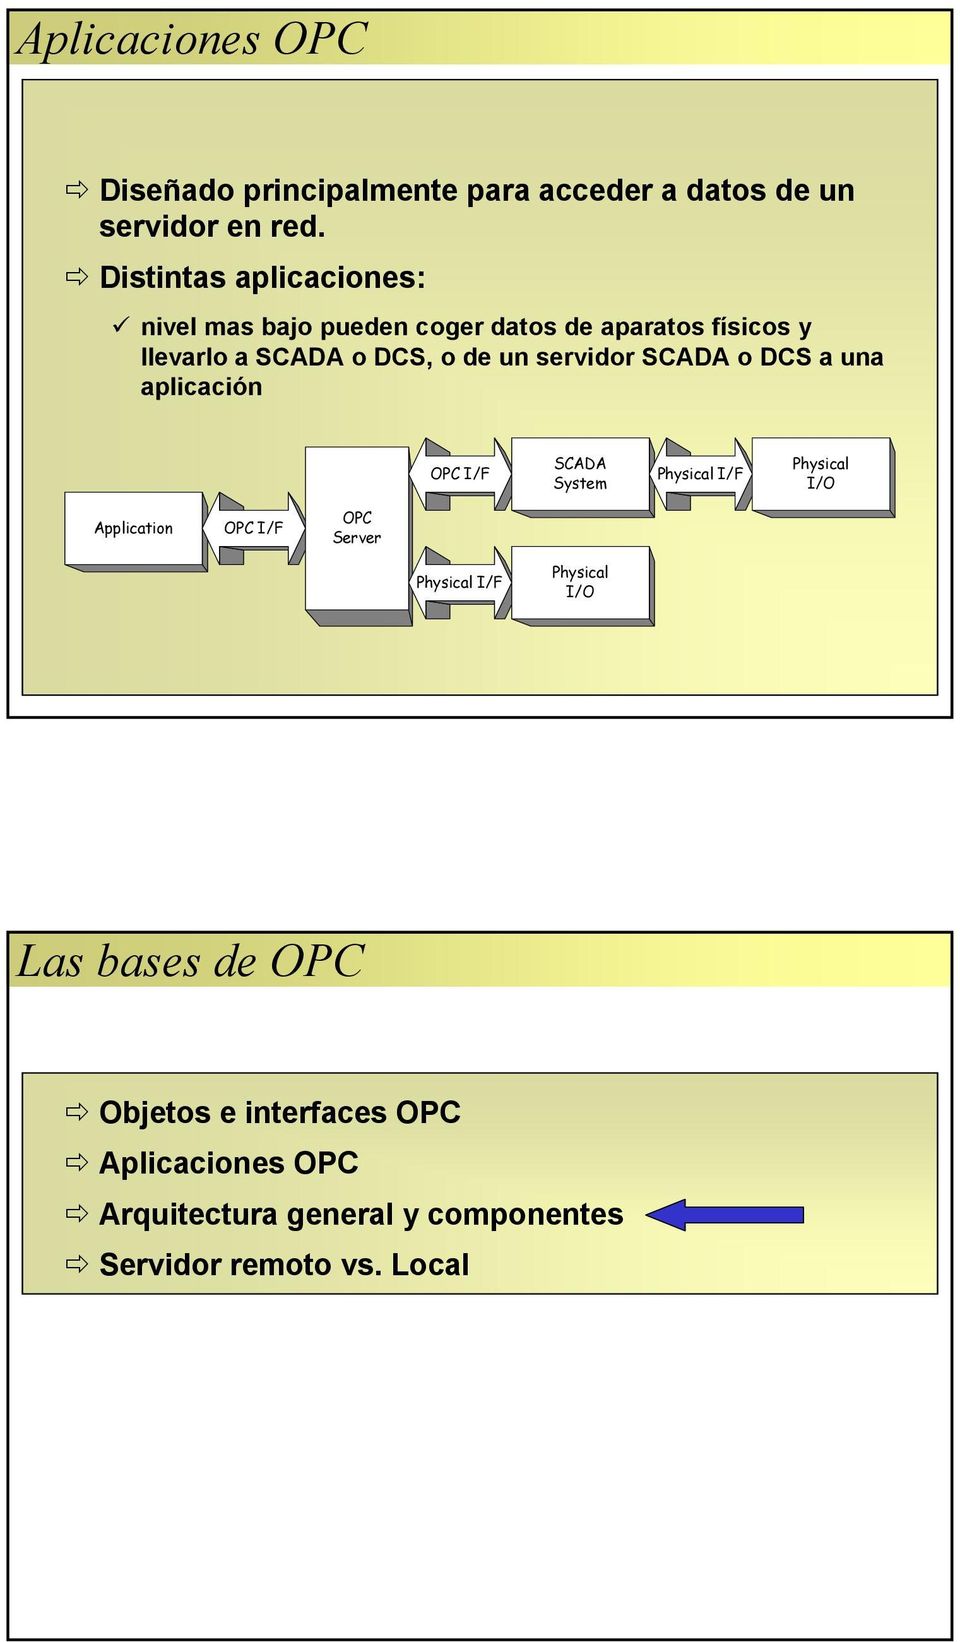 servidor SCADA o DCS a una aplicación OPC I/F SCADA System Physical I/F Physical Application OPC I/F OPC Server